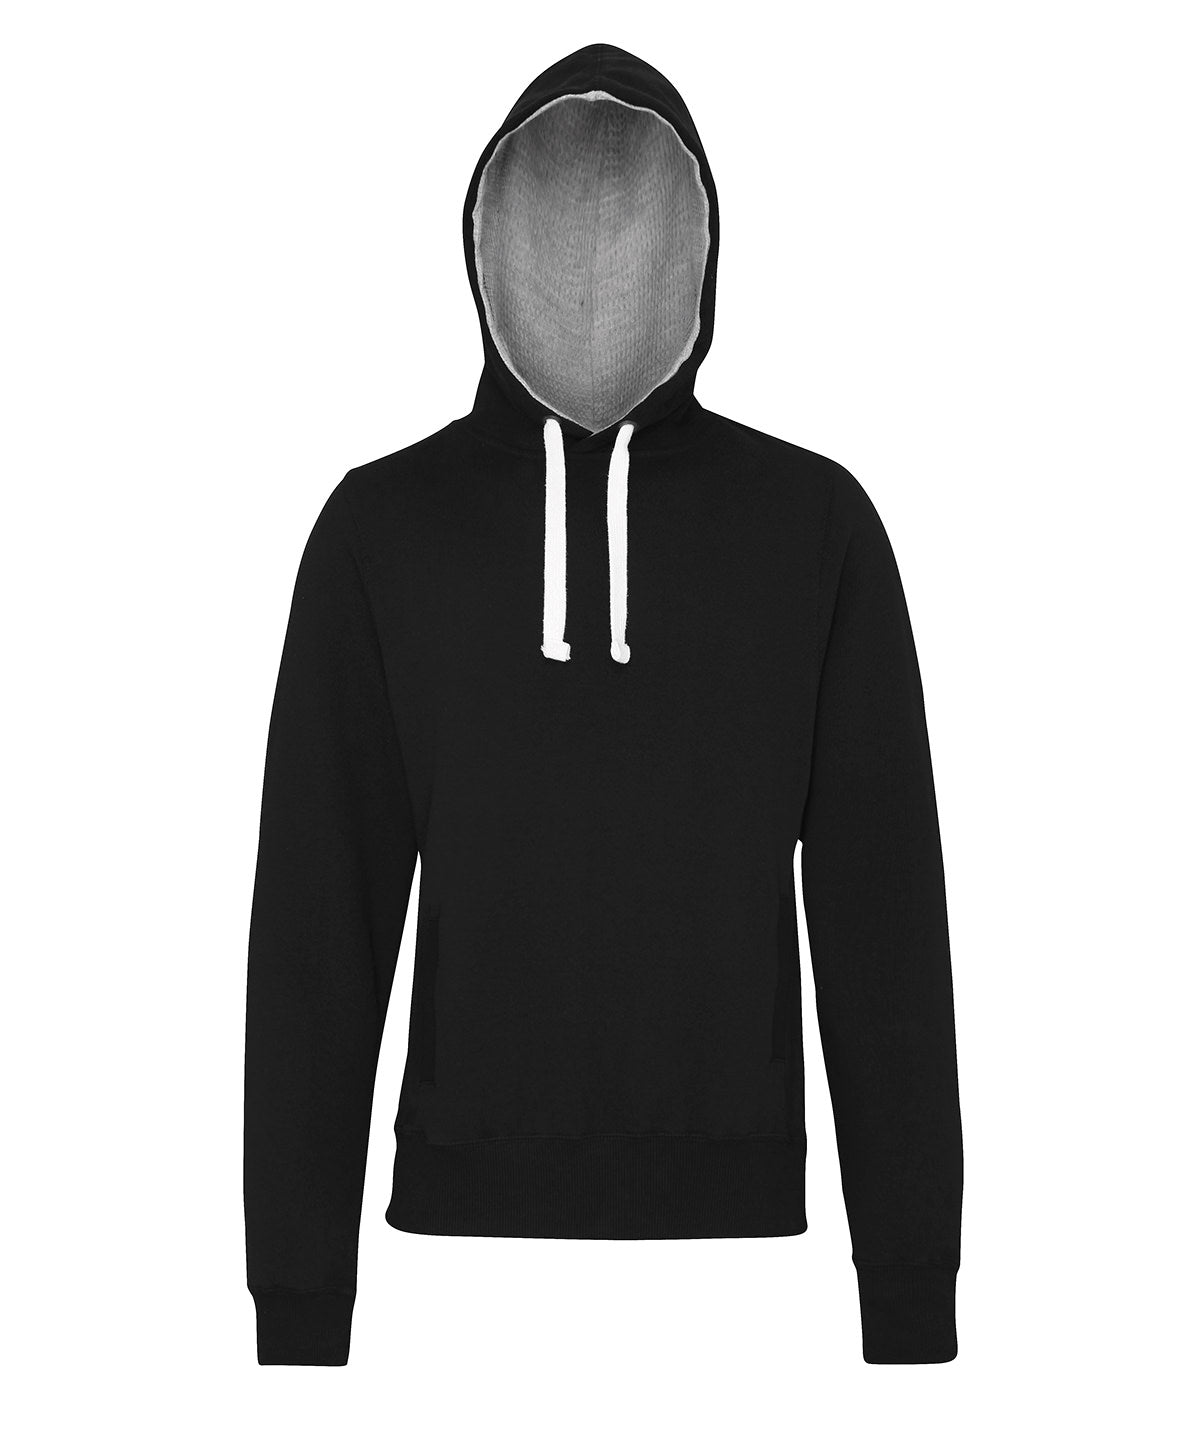 Personalised Hoodies - Dark Grey AWDis Just Hoods Chunky hoodie